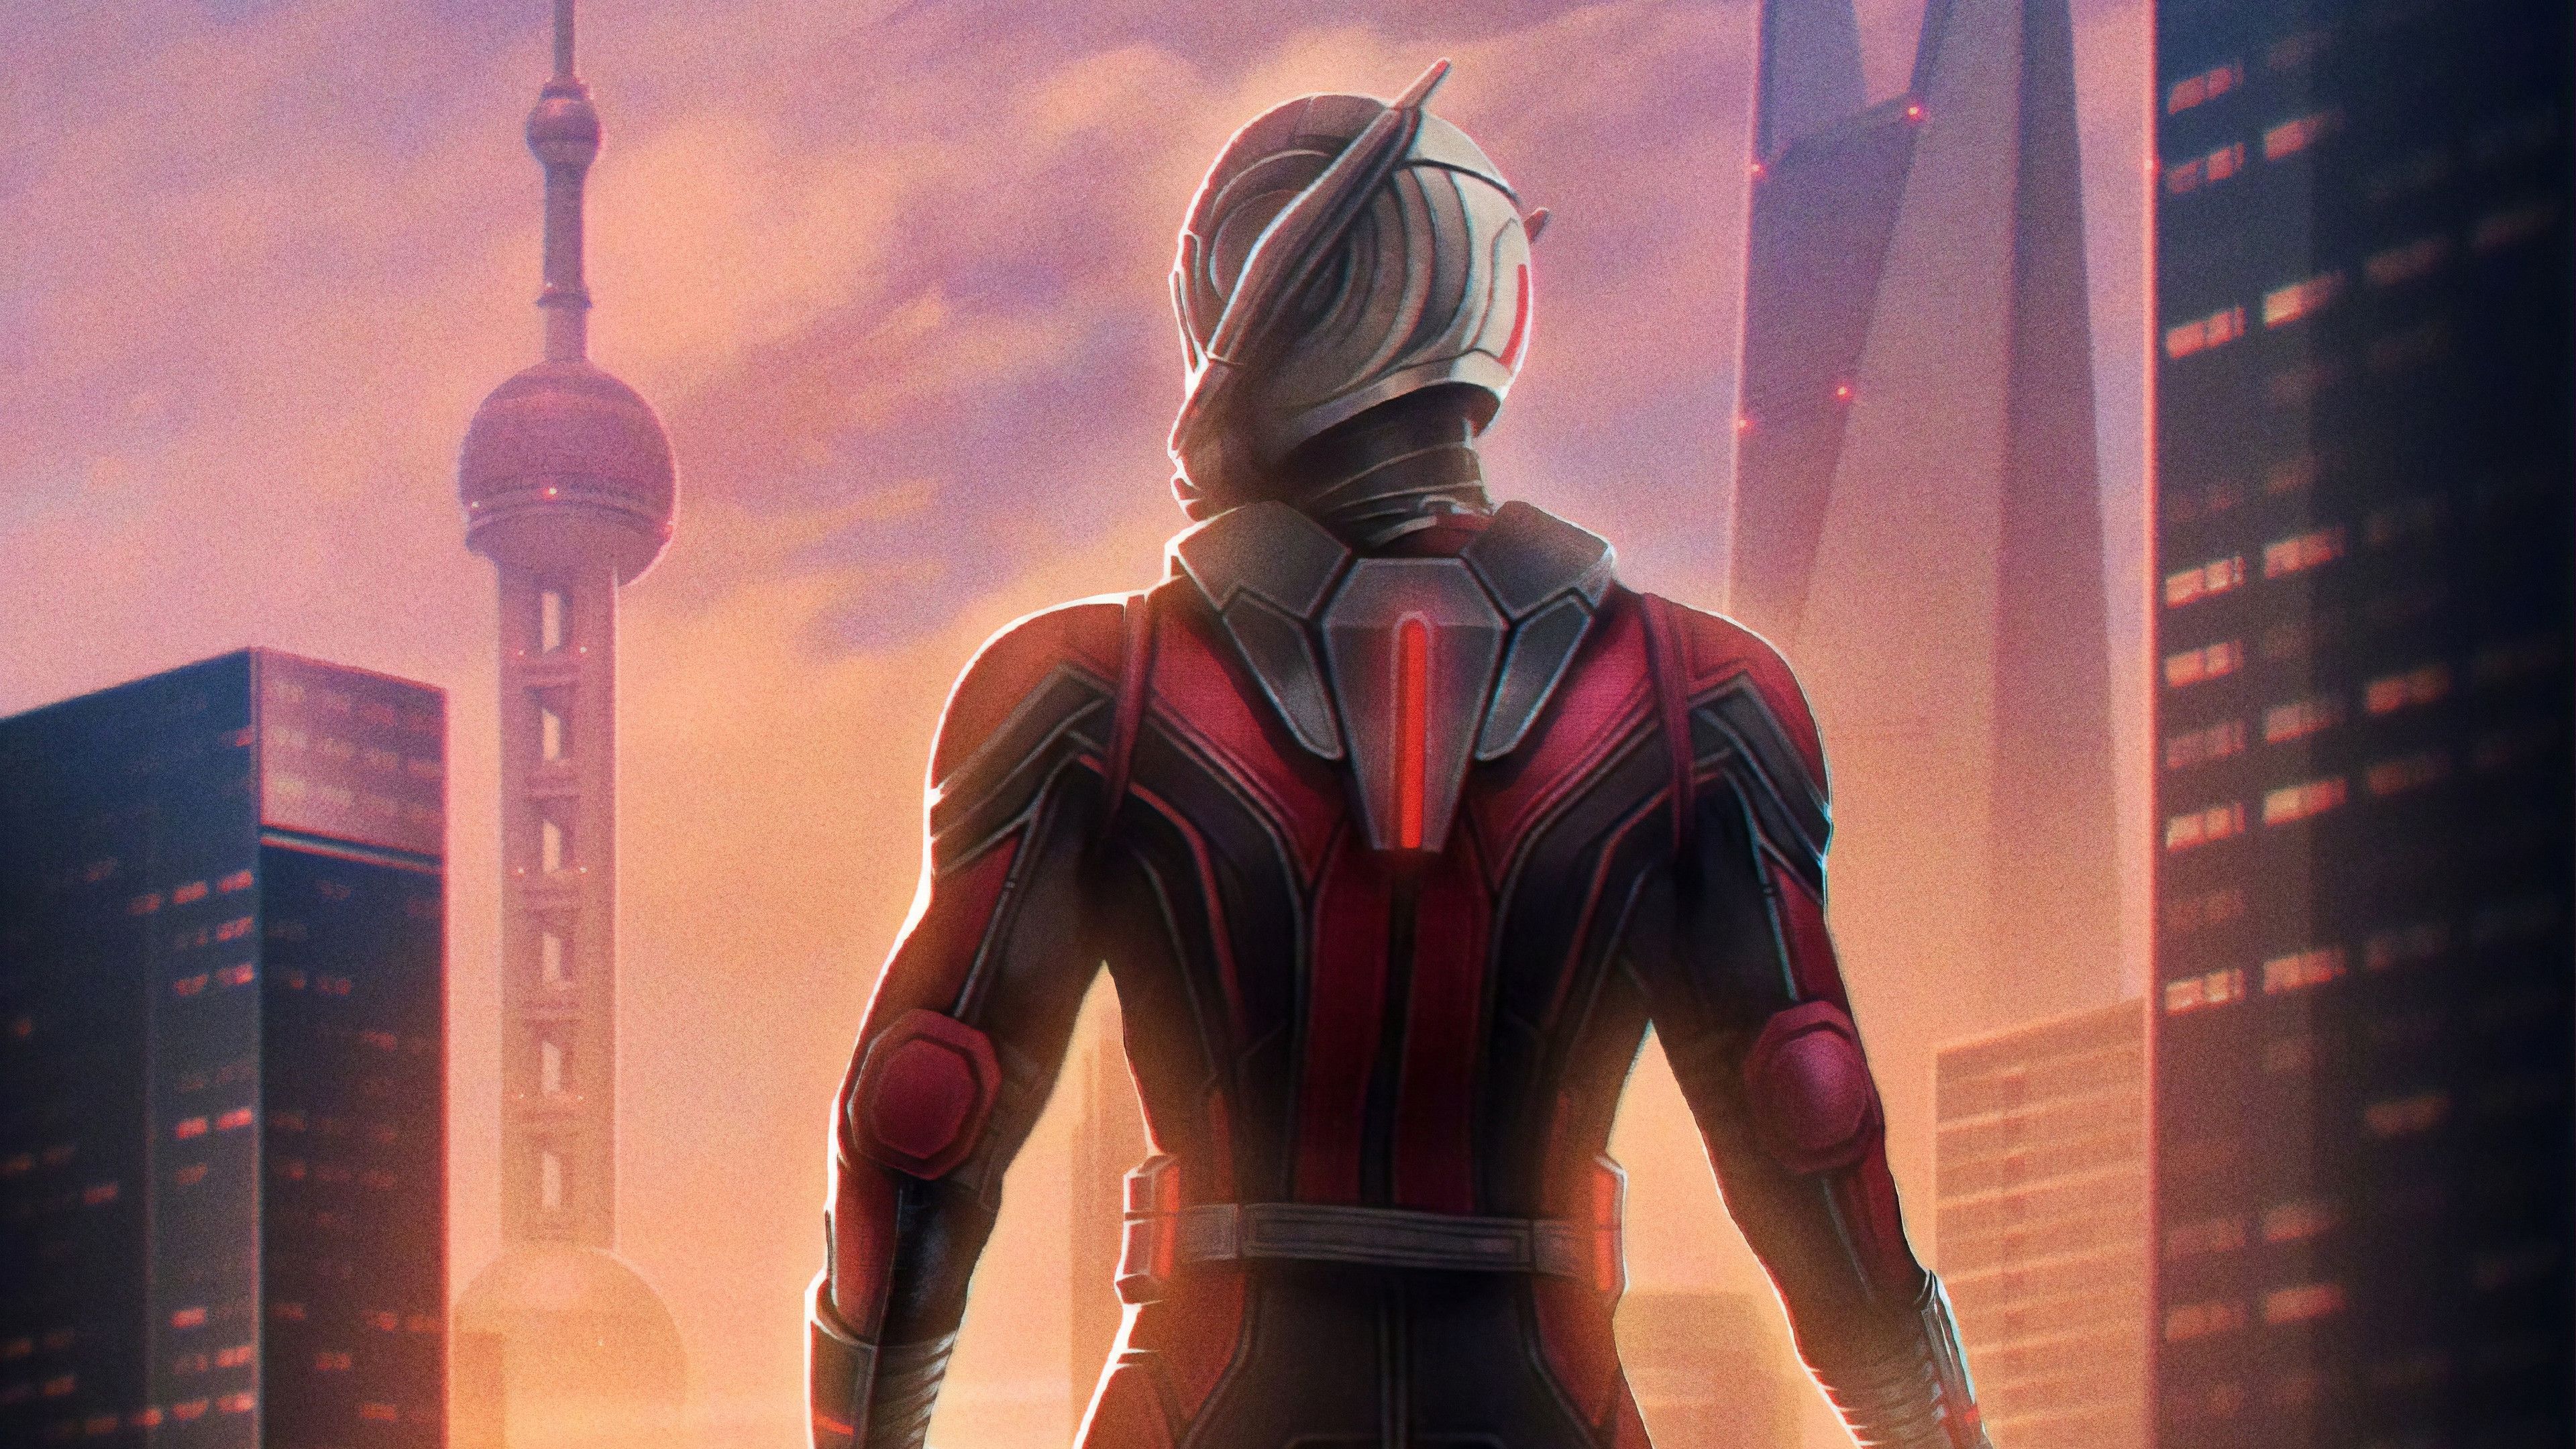 Avengers: Endgame Ant Man 4K Wallpaper Uhdpaper.com